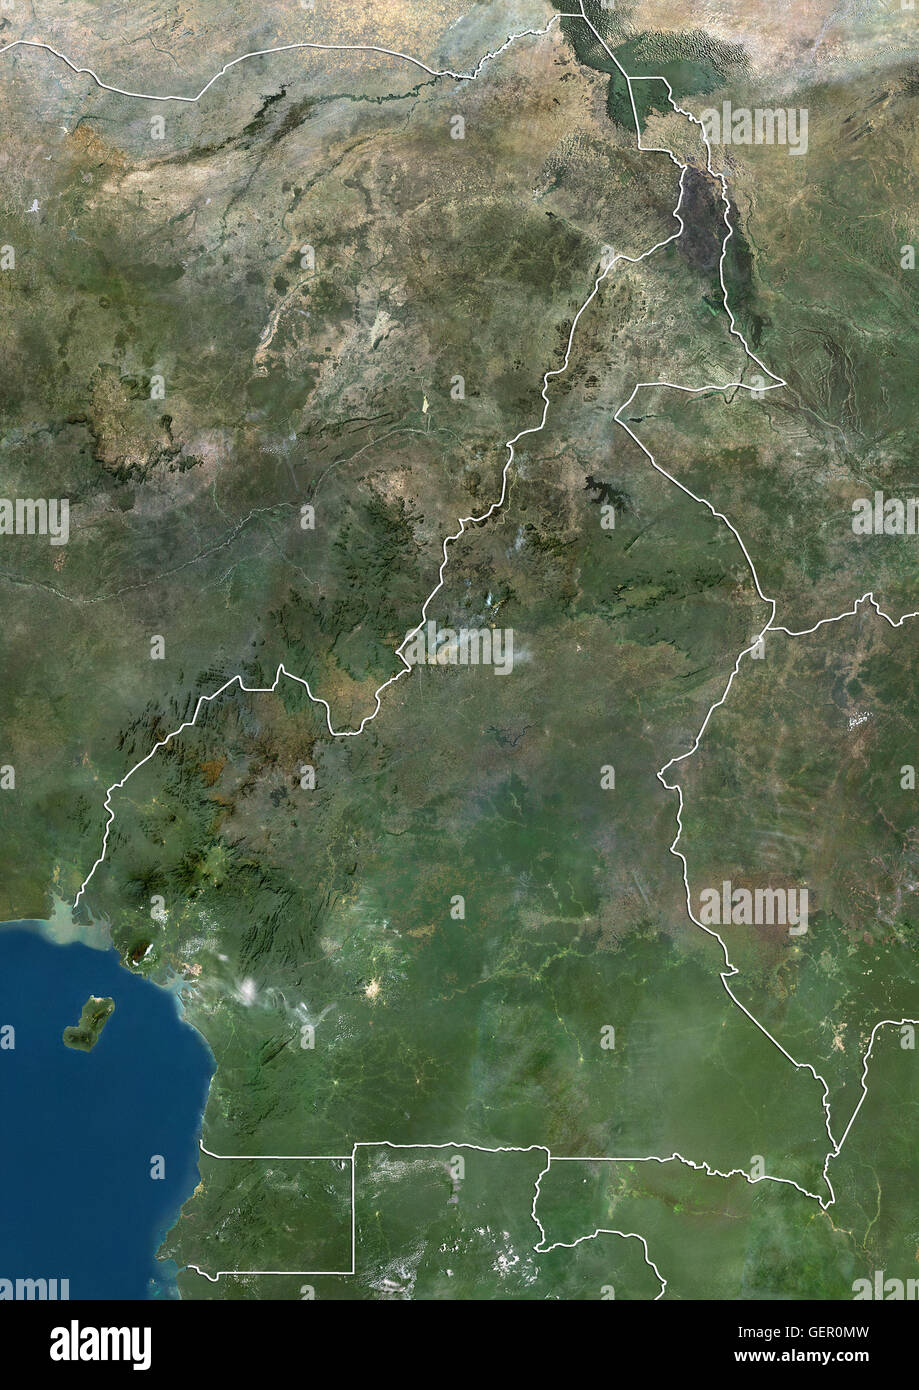 Satellitenansicht von Kamerun (mit Ländergrenzen). Dieses Bild wurde aus Daten von Landsat-Satelliten erworben erstellt. Stockfoto